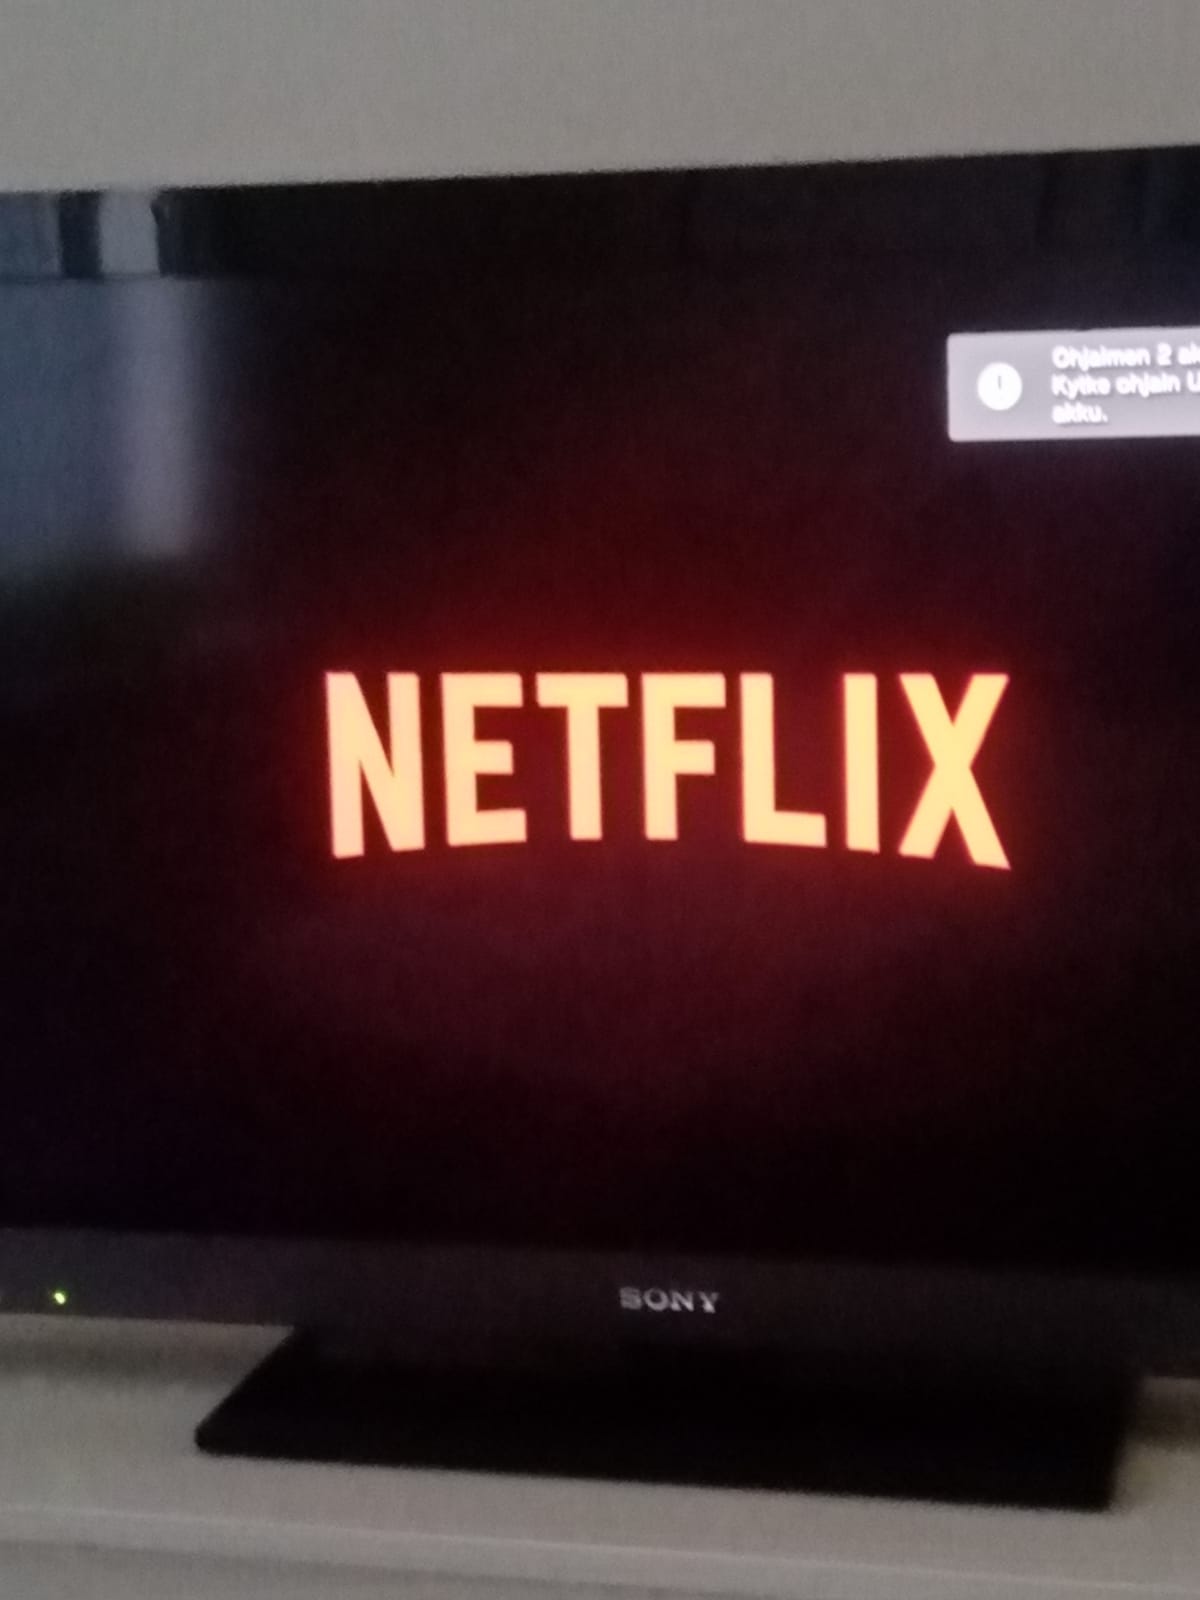 Jenni Nissisen kuvassa televisio, jossa Netflixin logo.